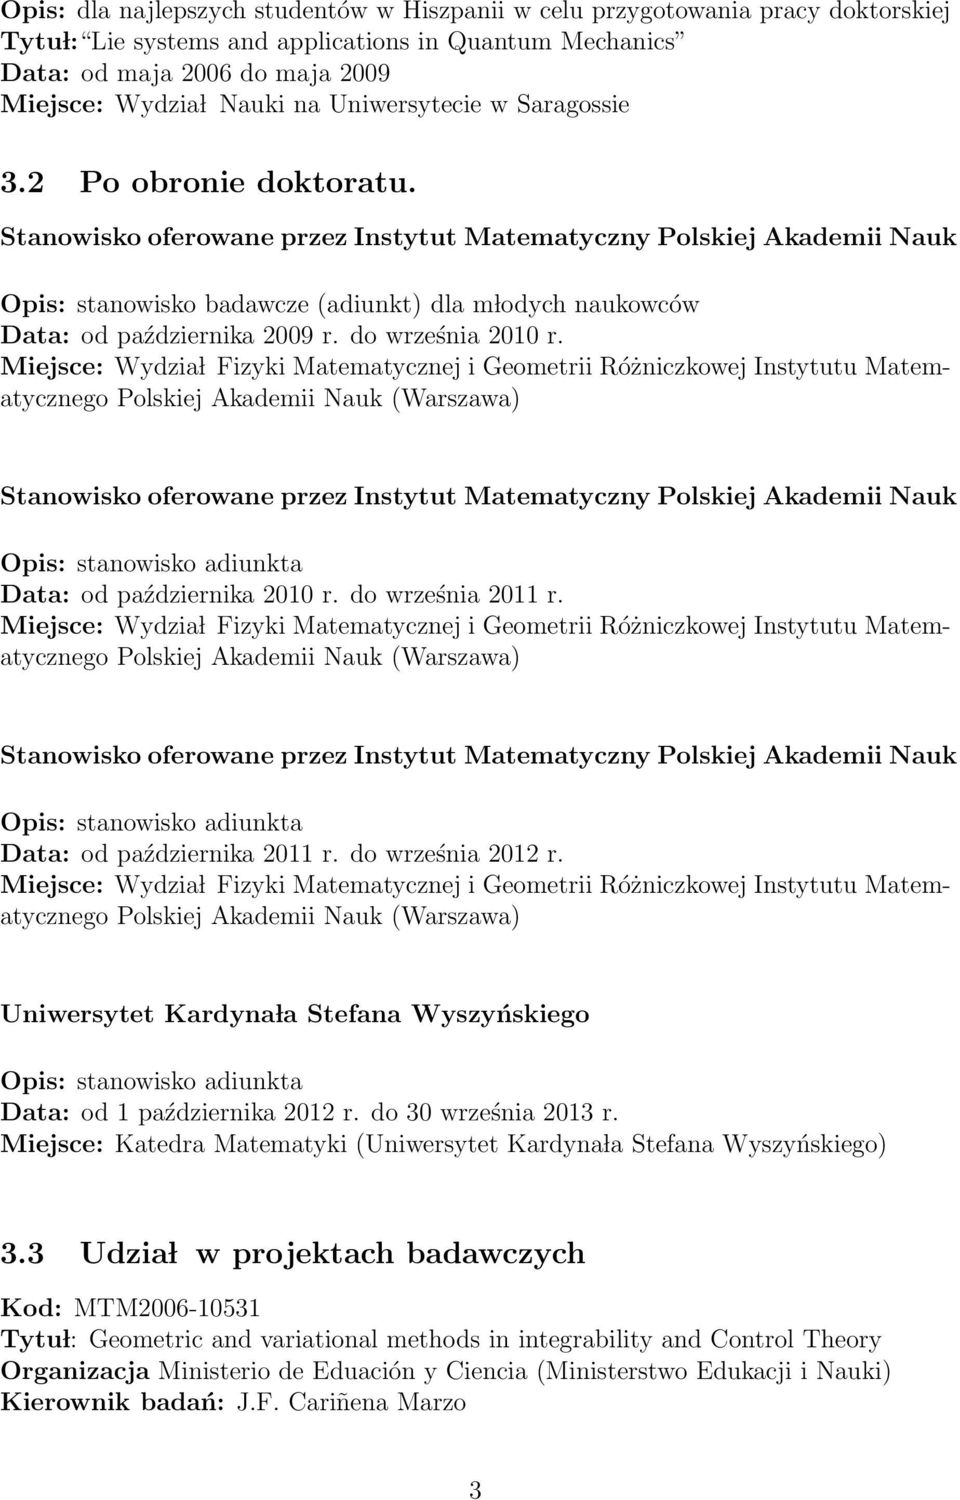 do września 2011 r. Data: od października 2011 r. do września 2012 r. Uniwersytet Kardyna la Stefana Wyszyńskiego Data: od 1 października 2012 r. do 30 września 2013 r.